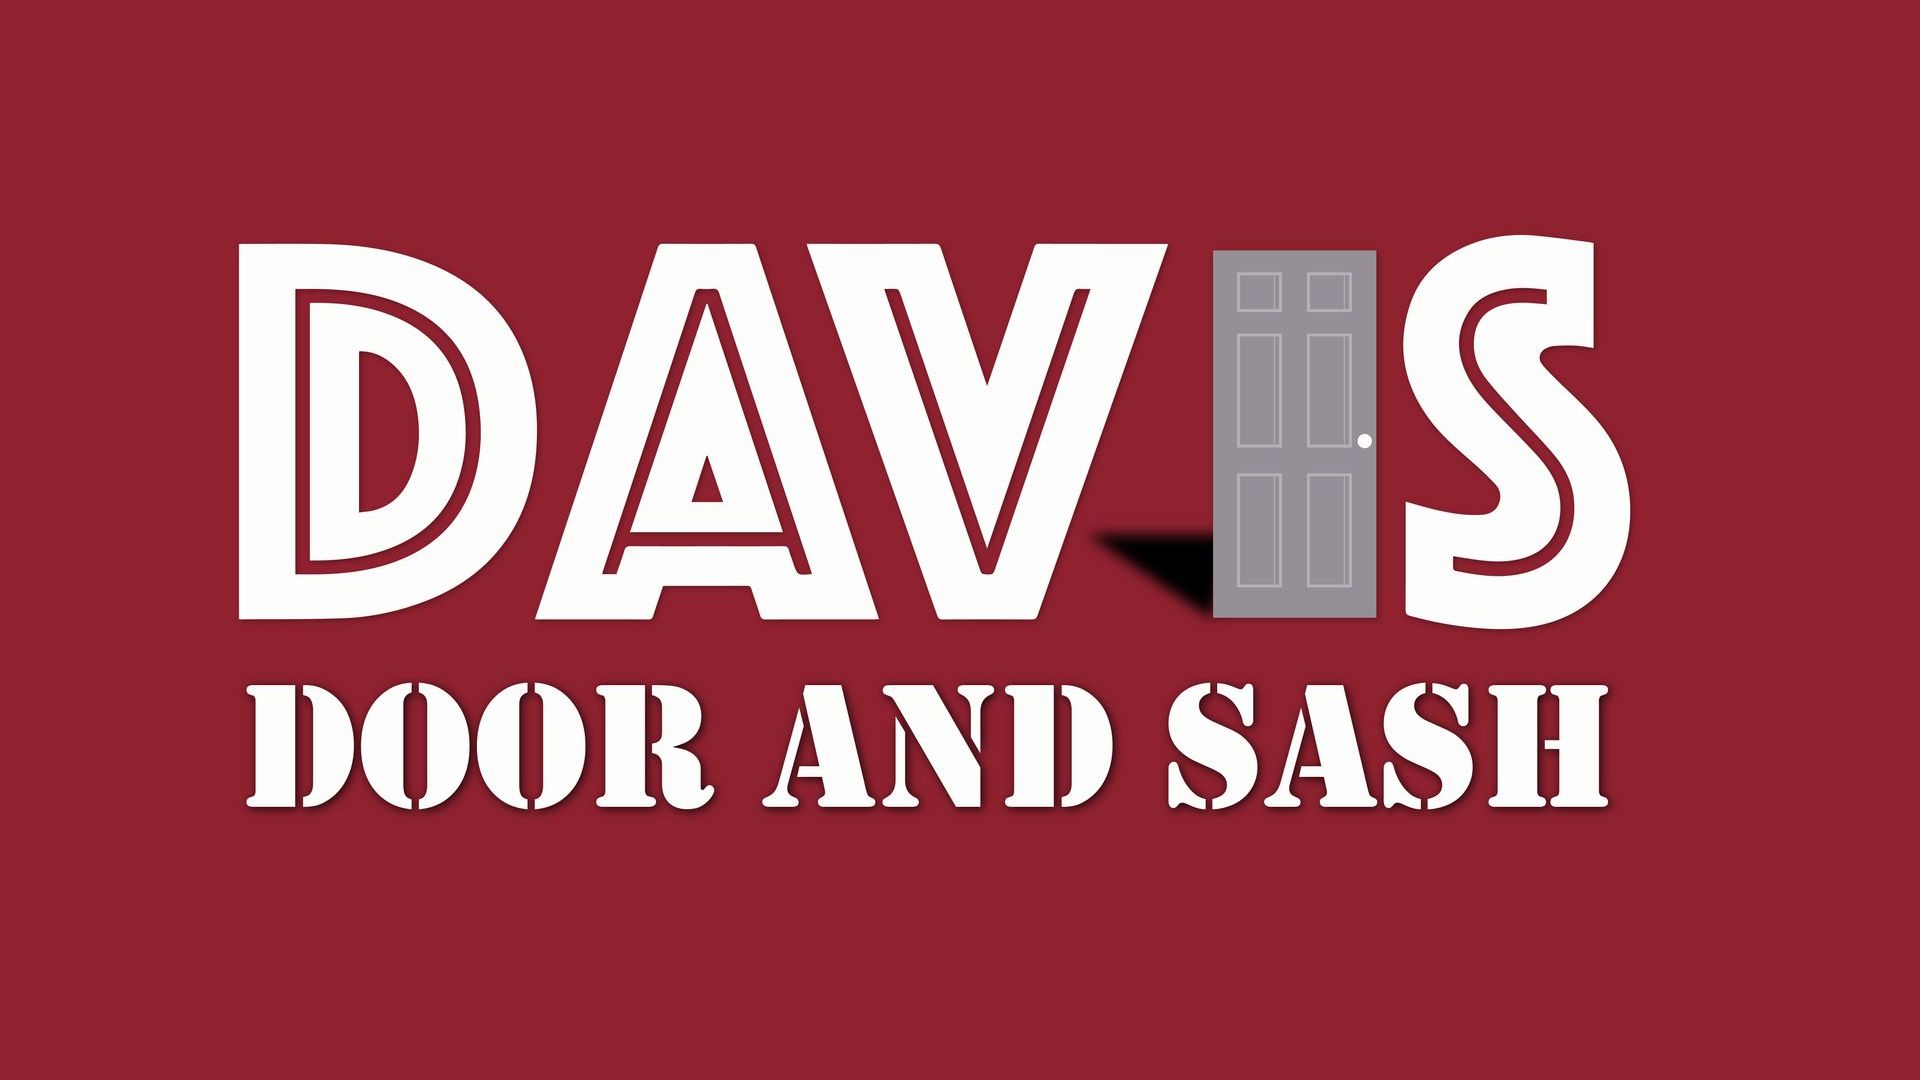 Davis Door and Sash